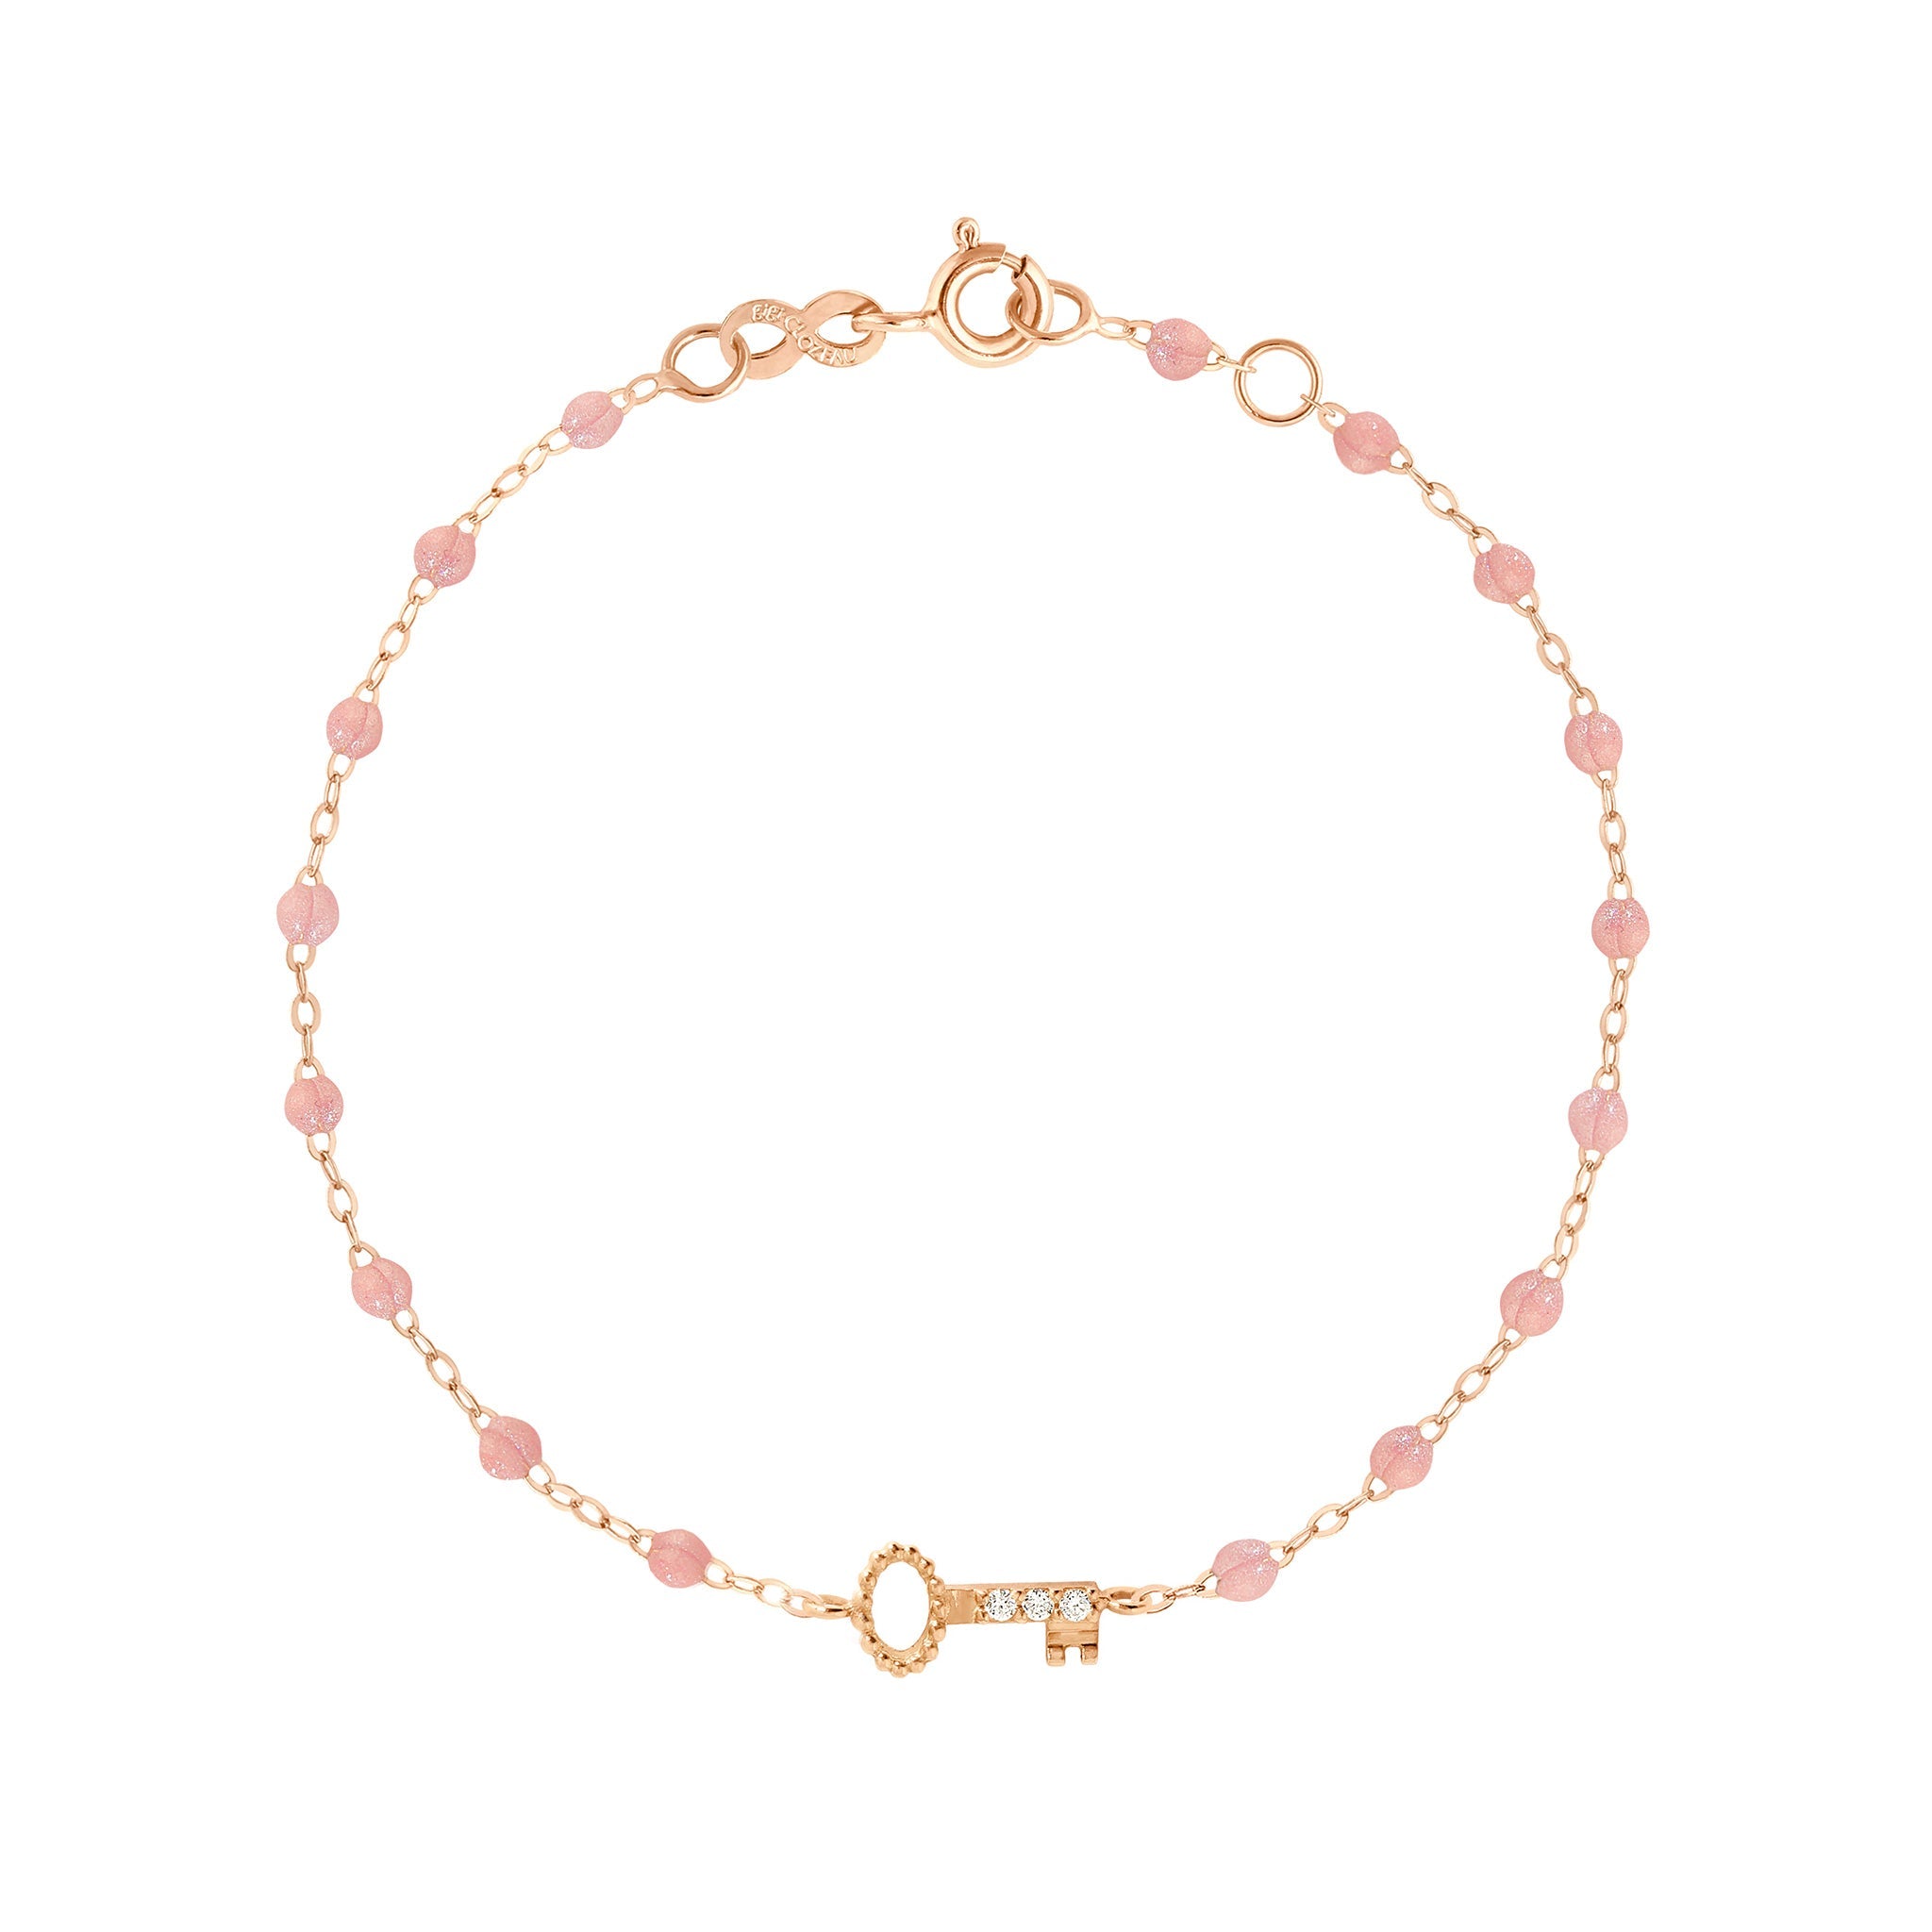 Gigi Clozeau - Bracelet blush Clé diamants, or rose, 17 cm